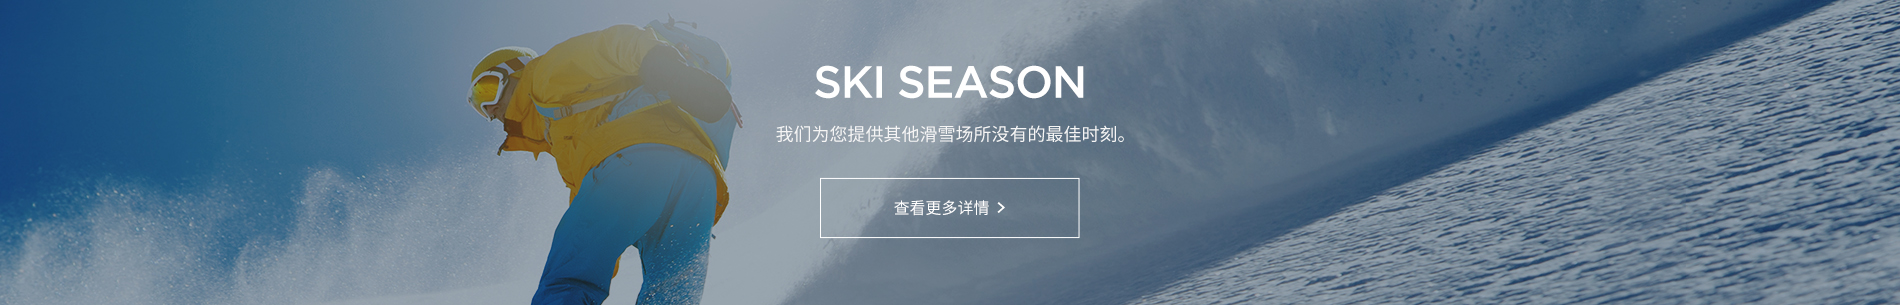 ski webzine